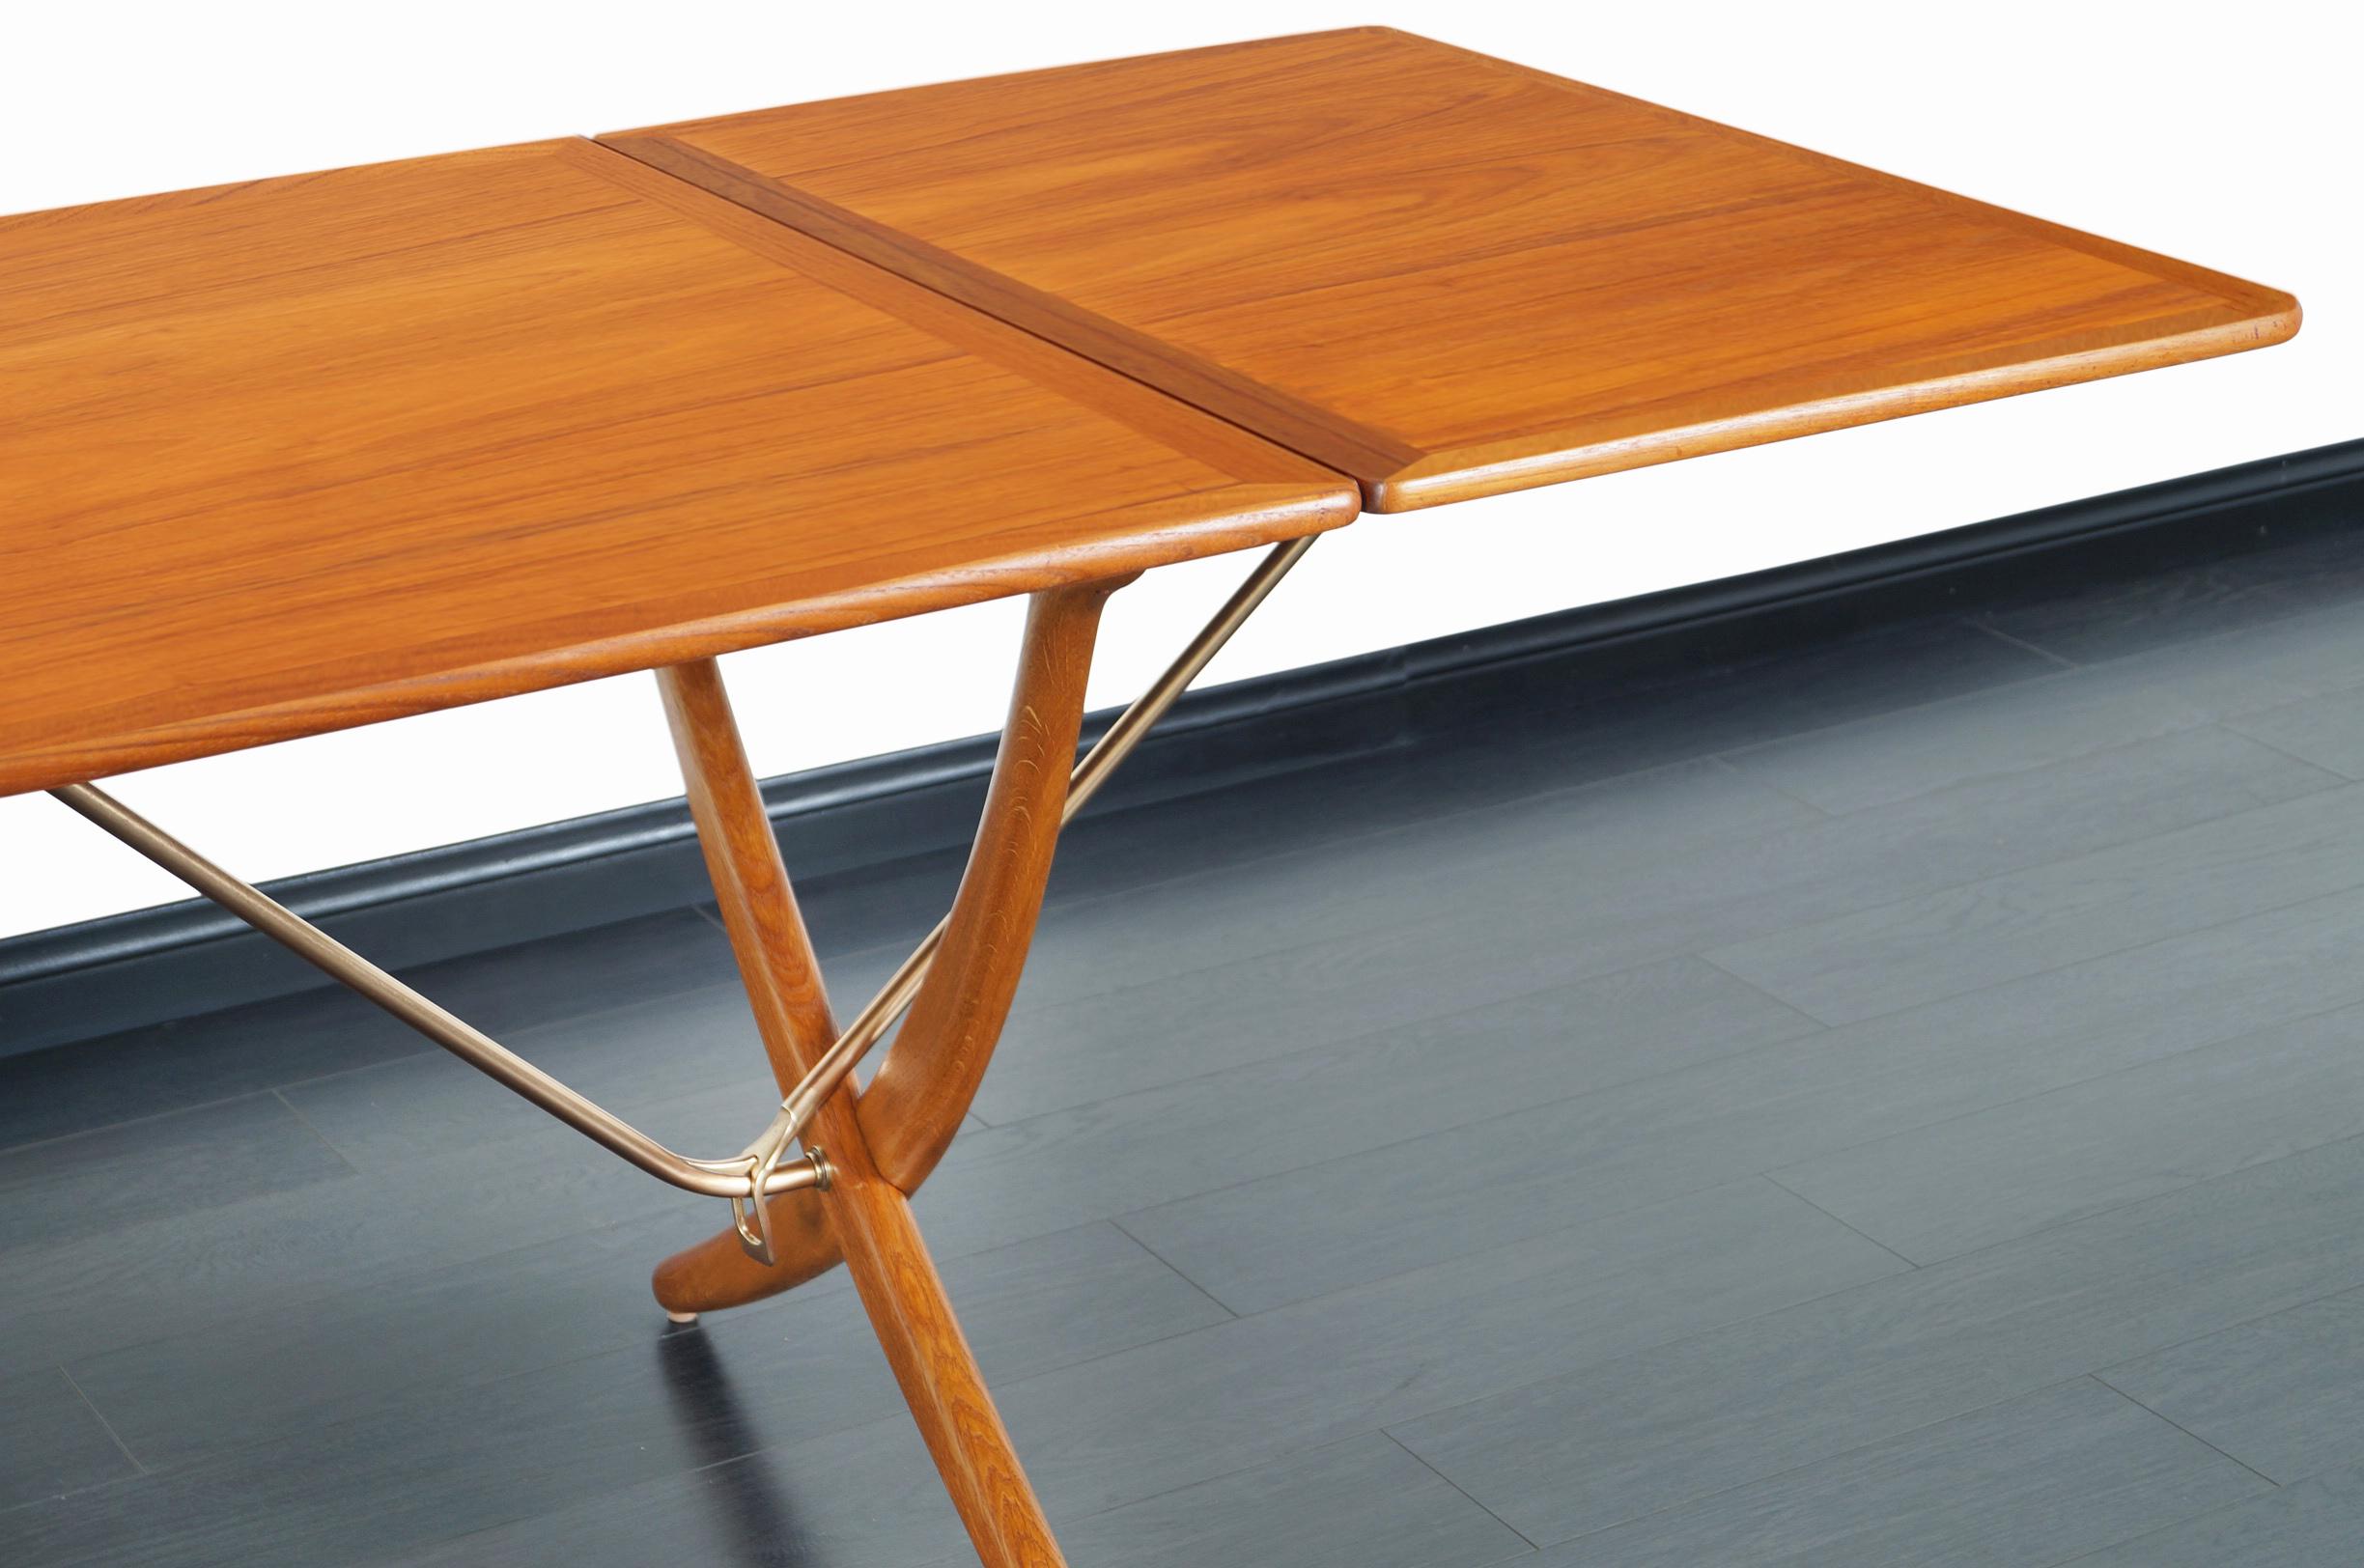 Mid-Century Modern Danish AT-304 Dining Table by Hans J. Wegner for Andrea Tuck